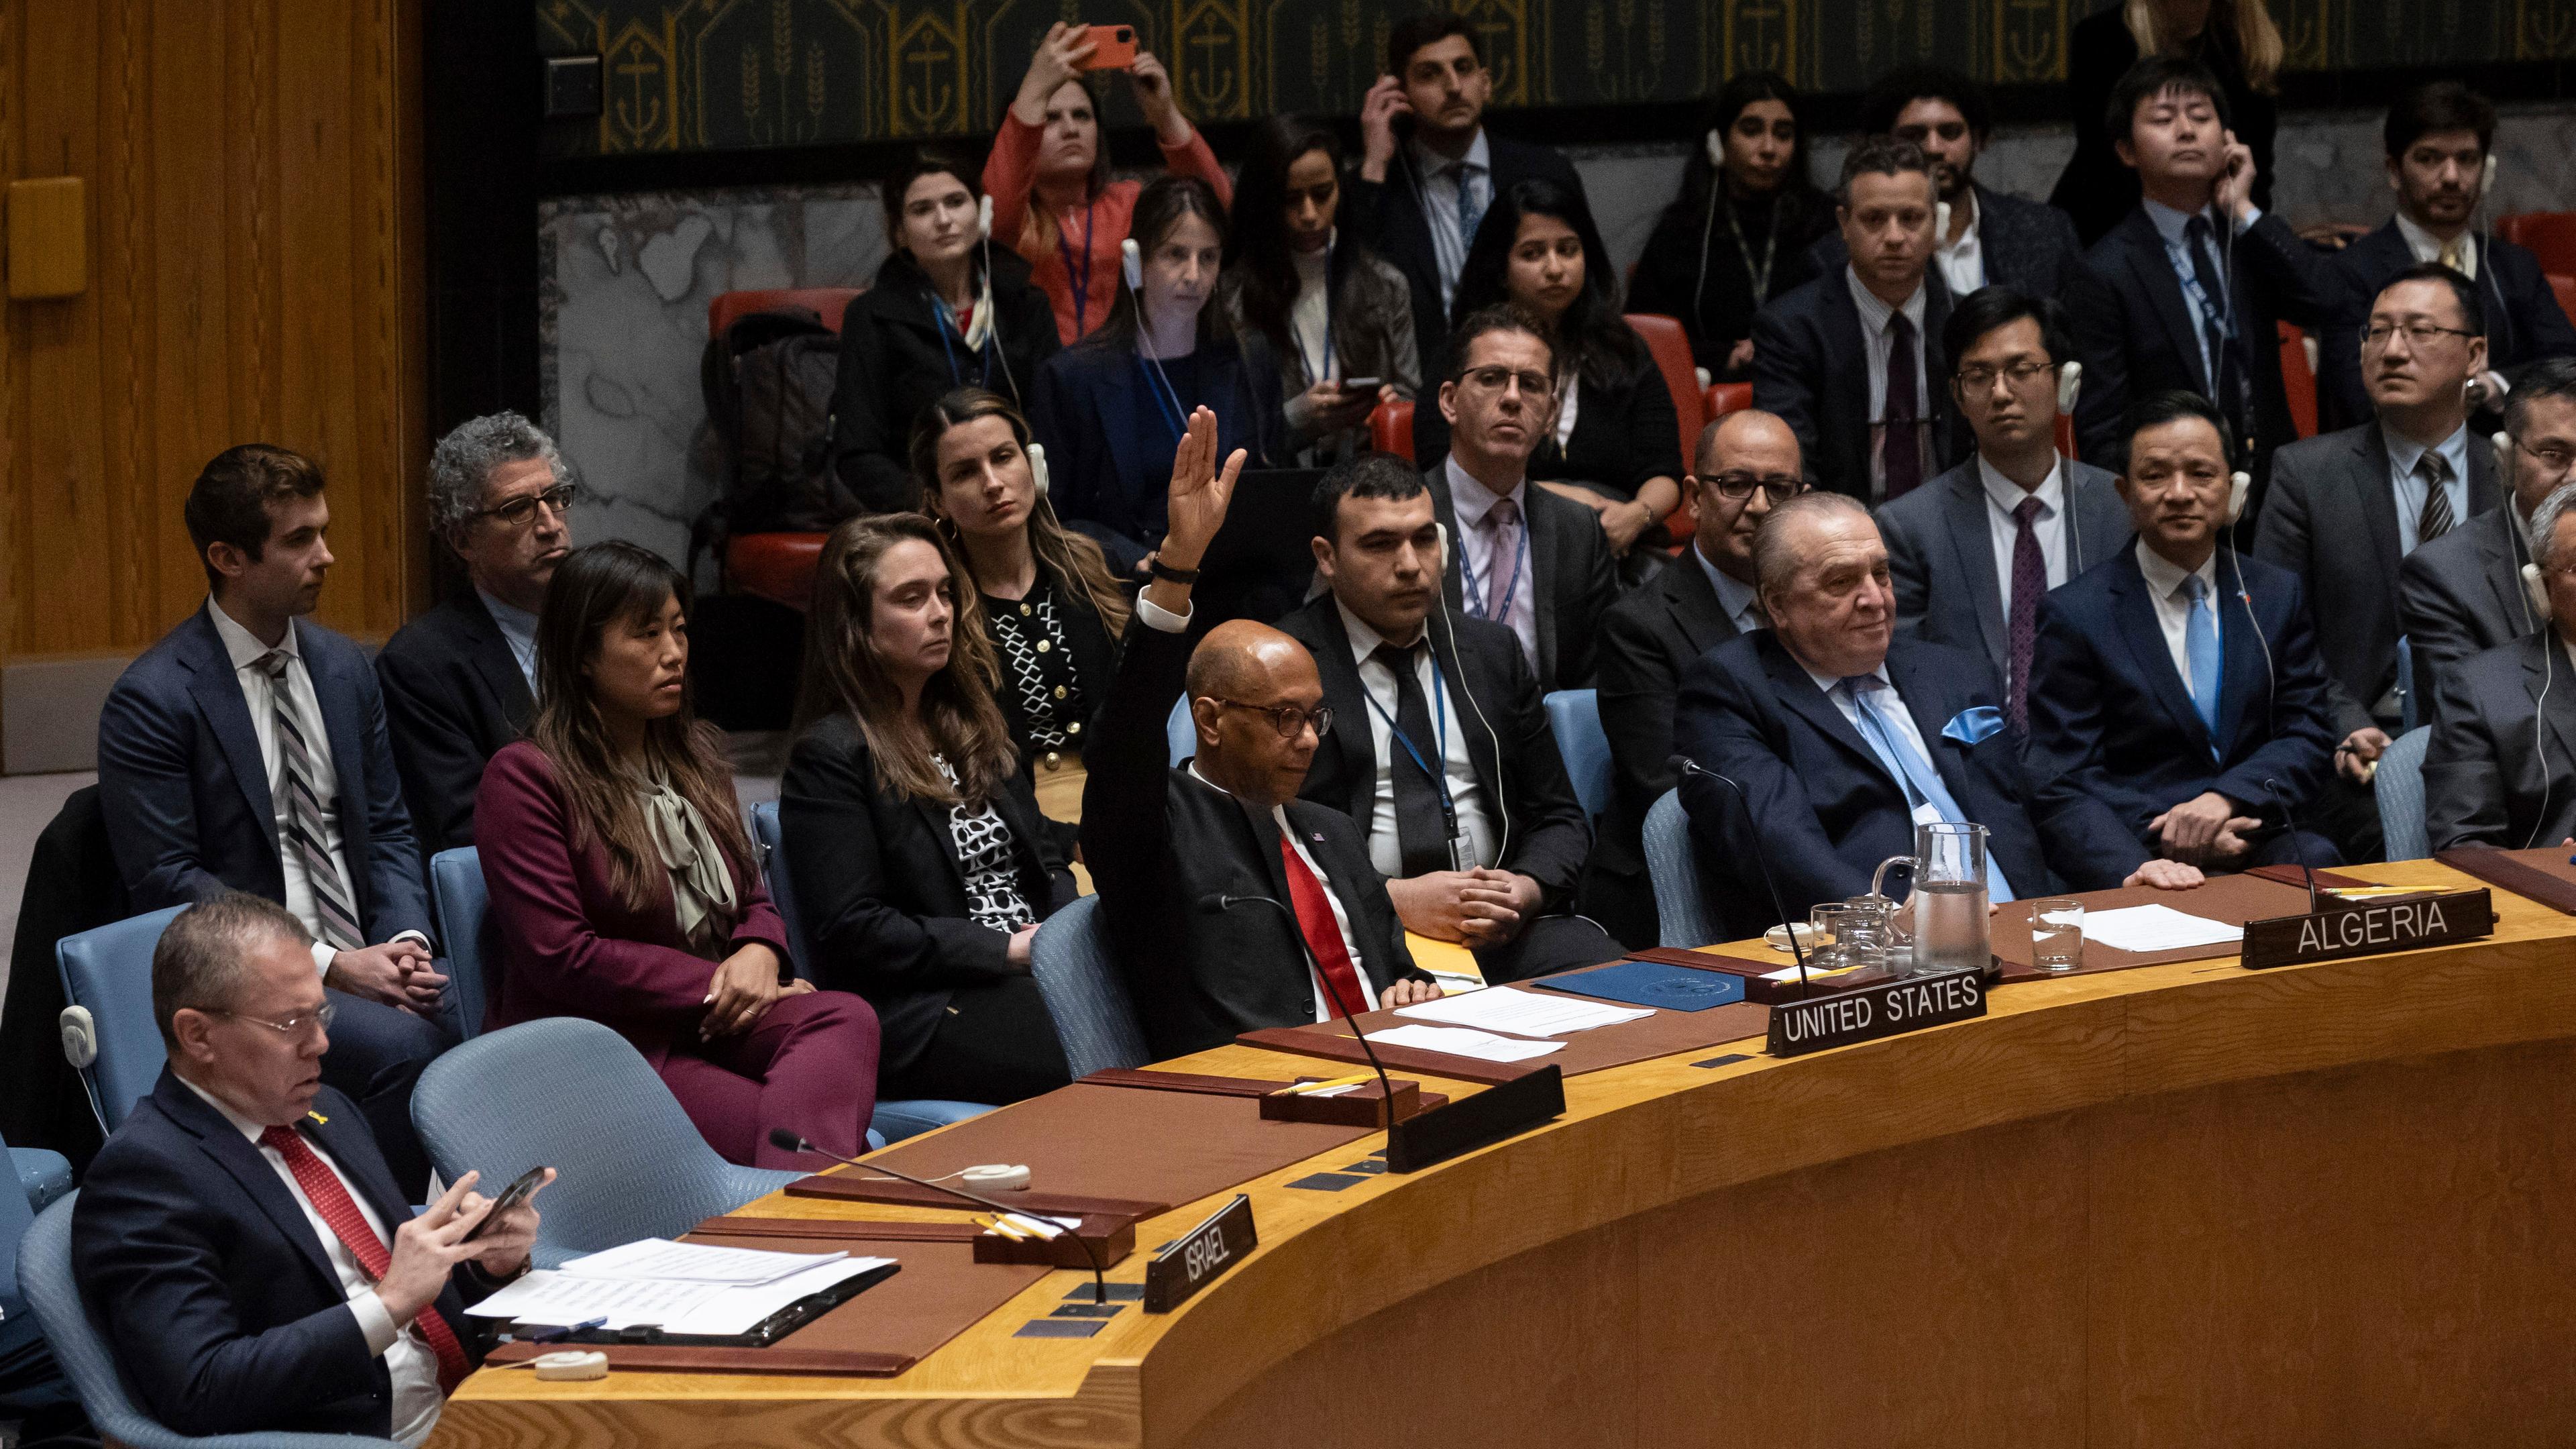 Der stellvertretende US-Botschafter Robert Wood stimmt gegen eine Vollmitgliedschaft der Palästinenser in den Vereinten Nationen